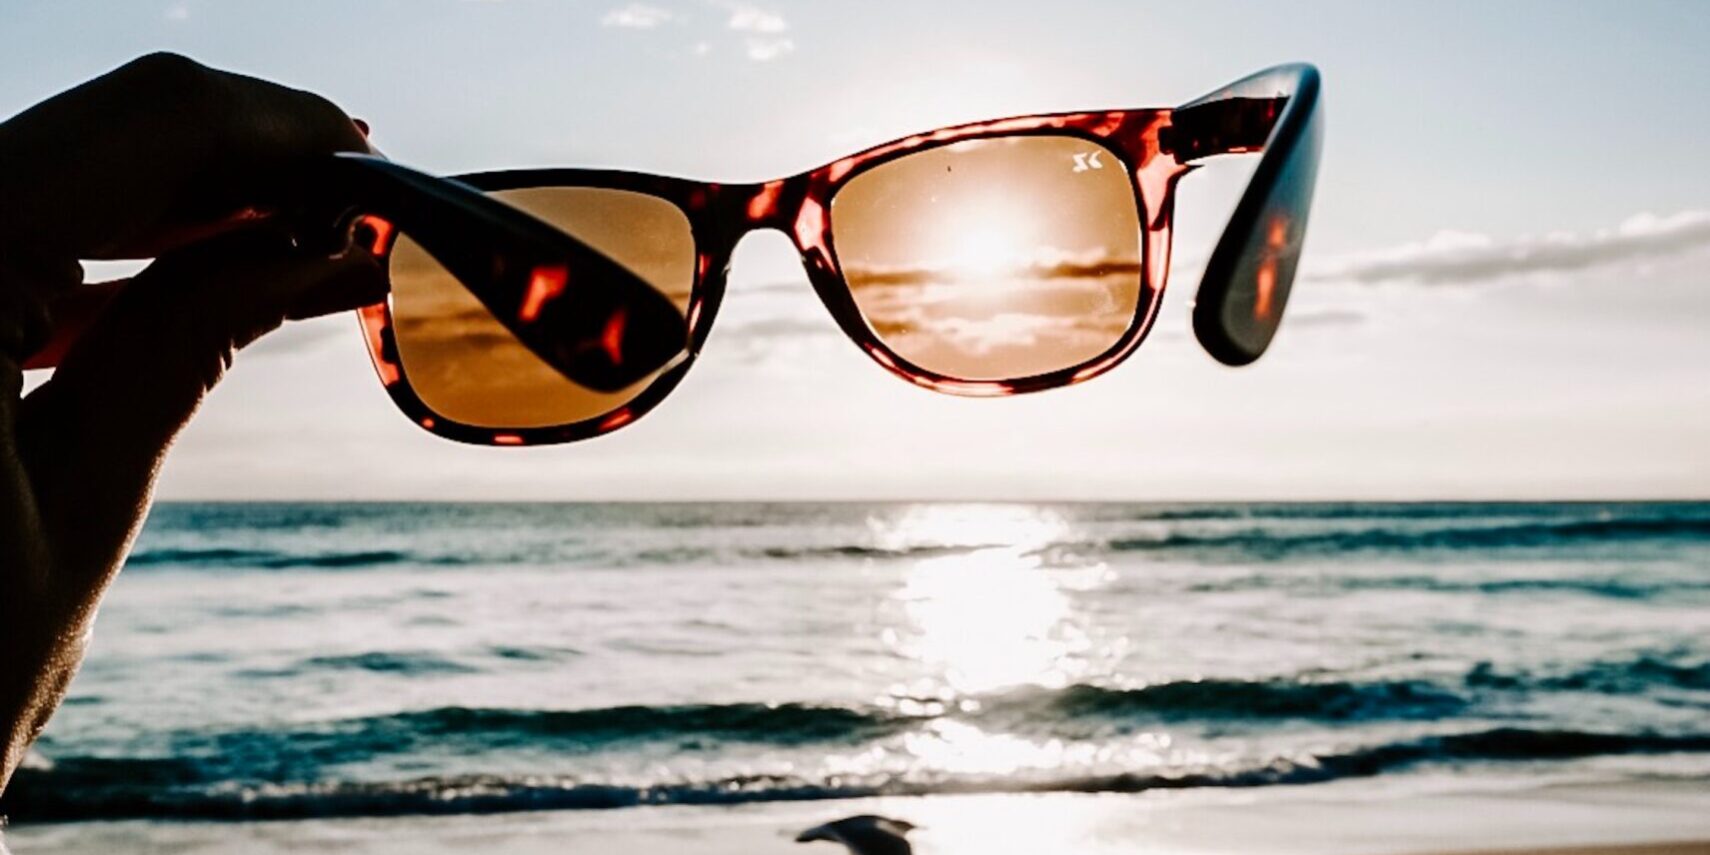 PolarizedPlus2 Lens Benefits - Clarity and Color | Shop Maui Jim Sunglasses